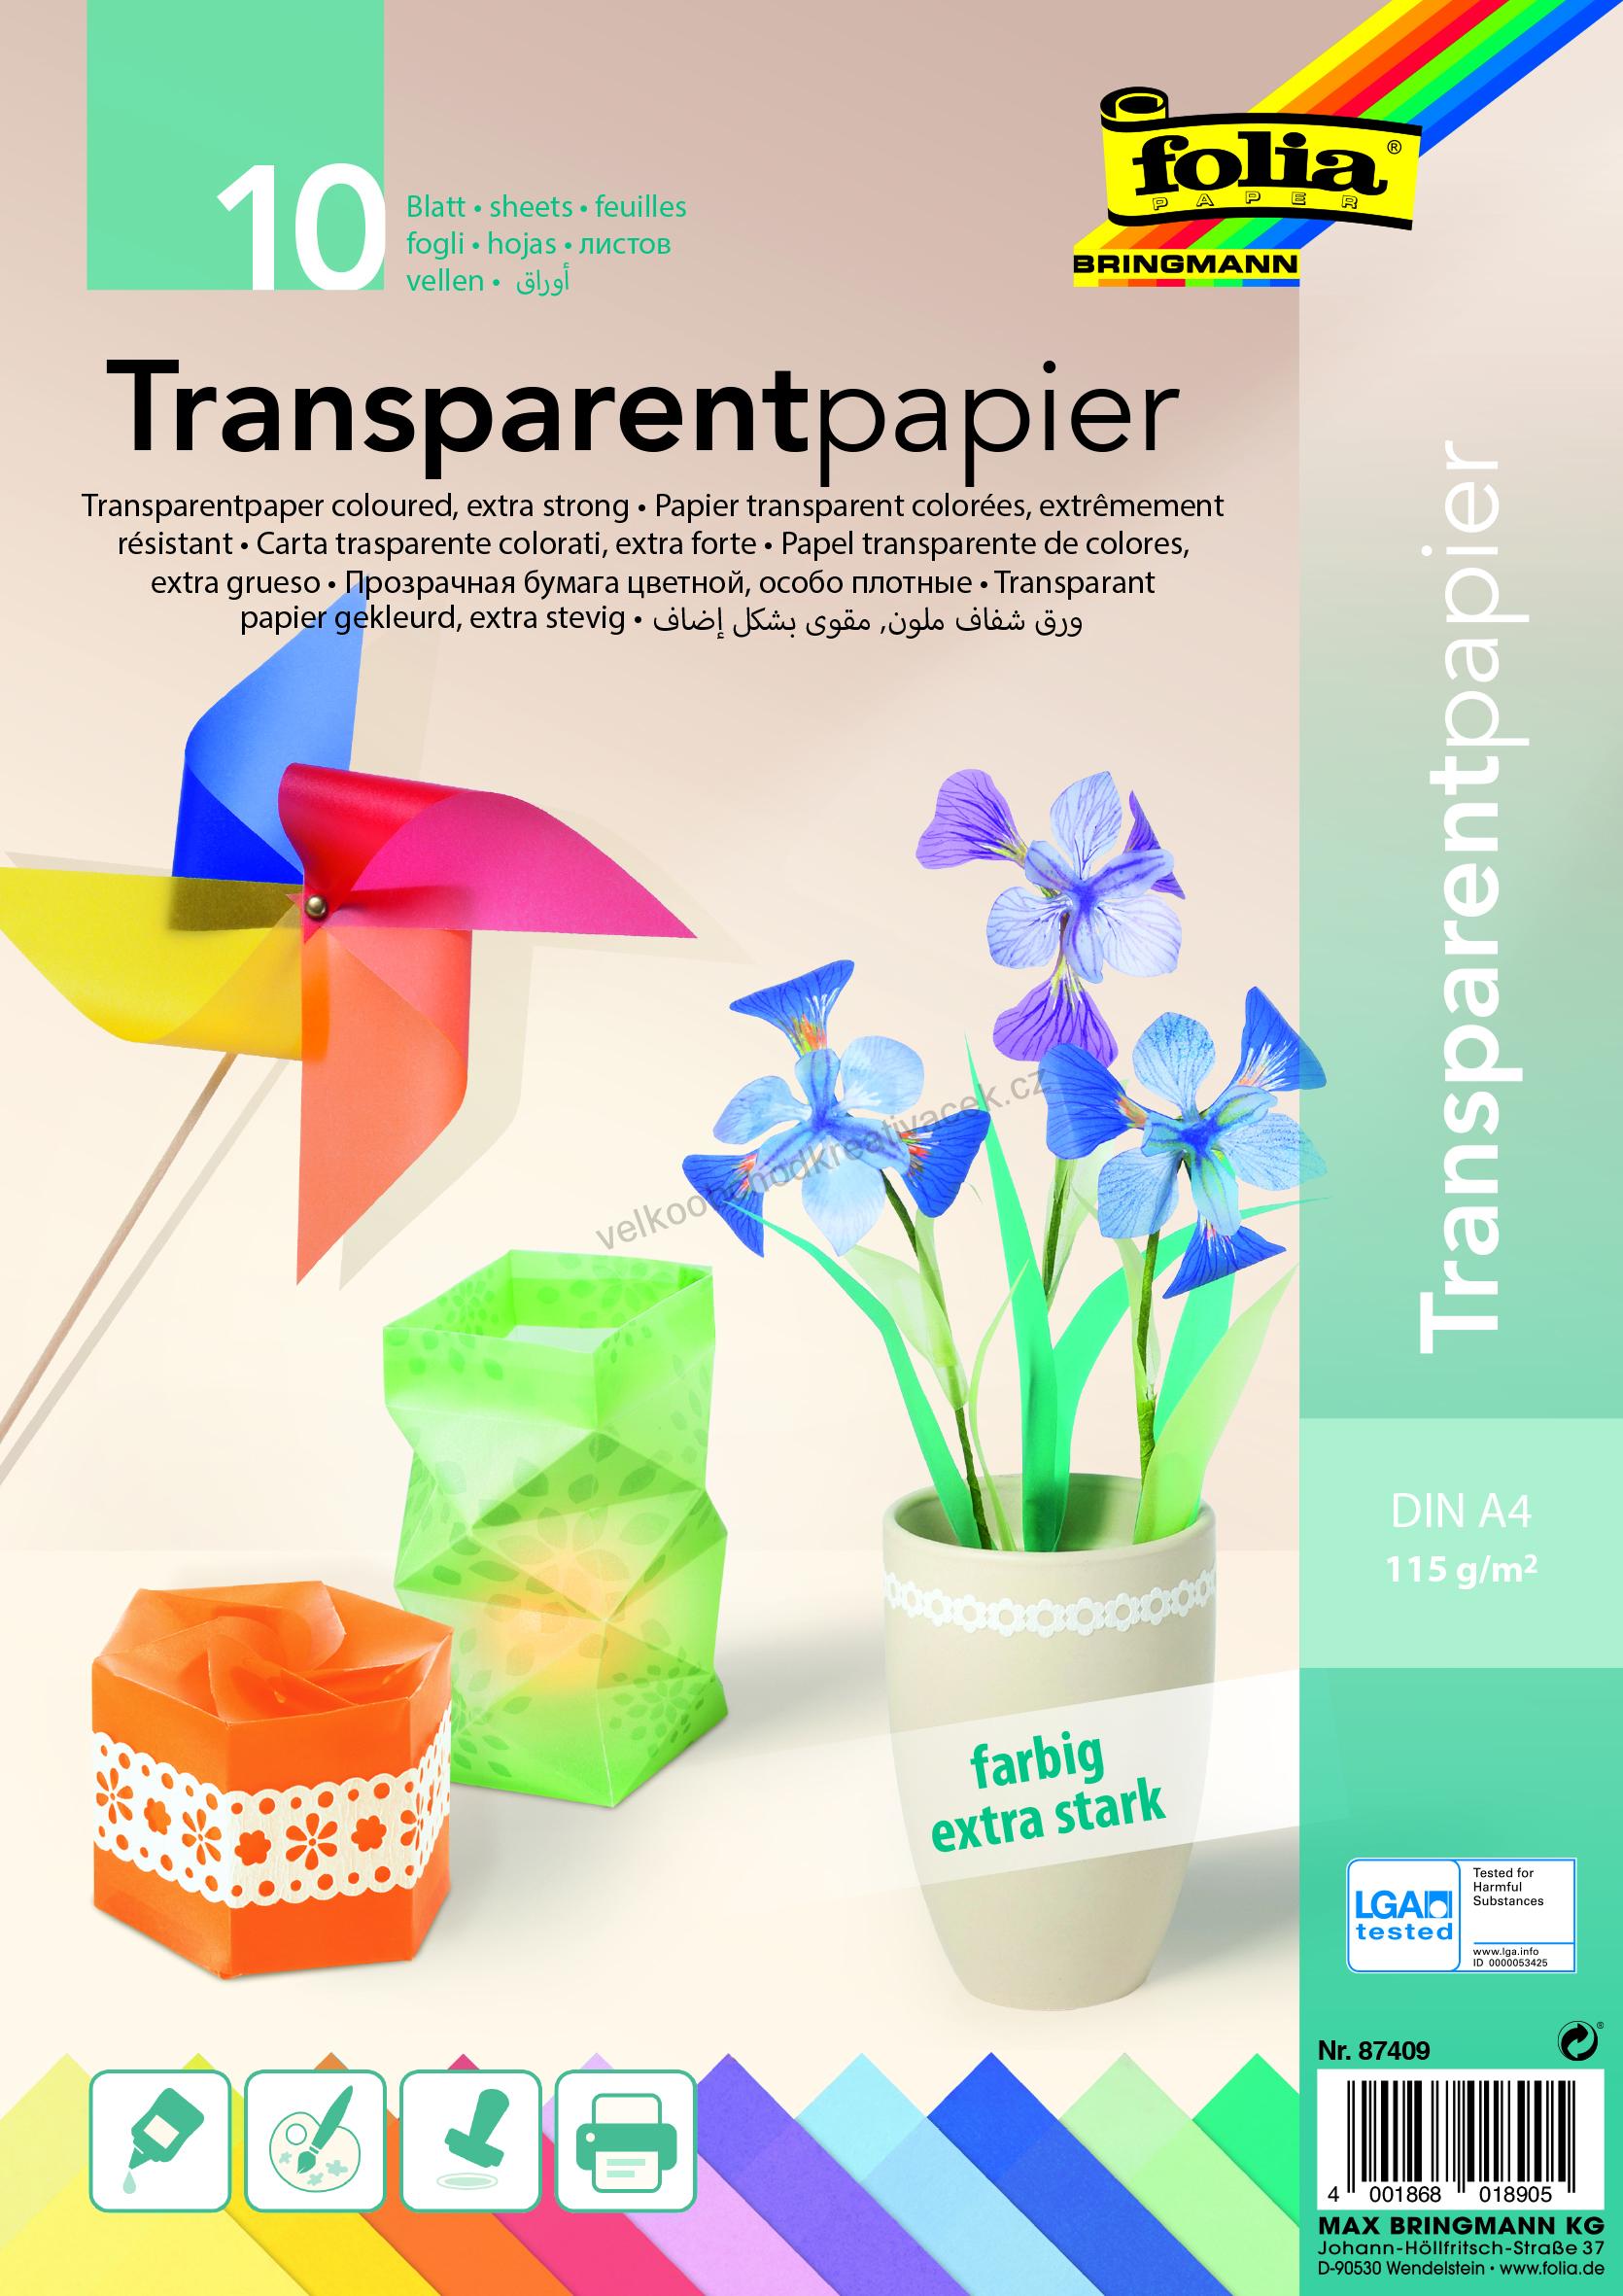 Transparent papír - 115 g/m2 - DIN A4 - 10 listů v 10 barvách